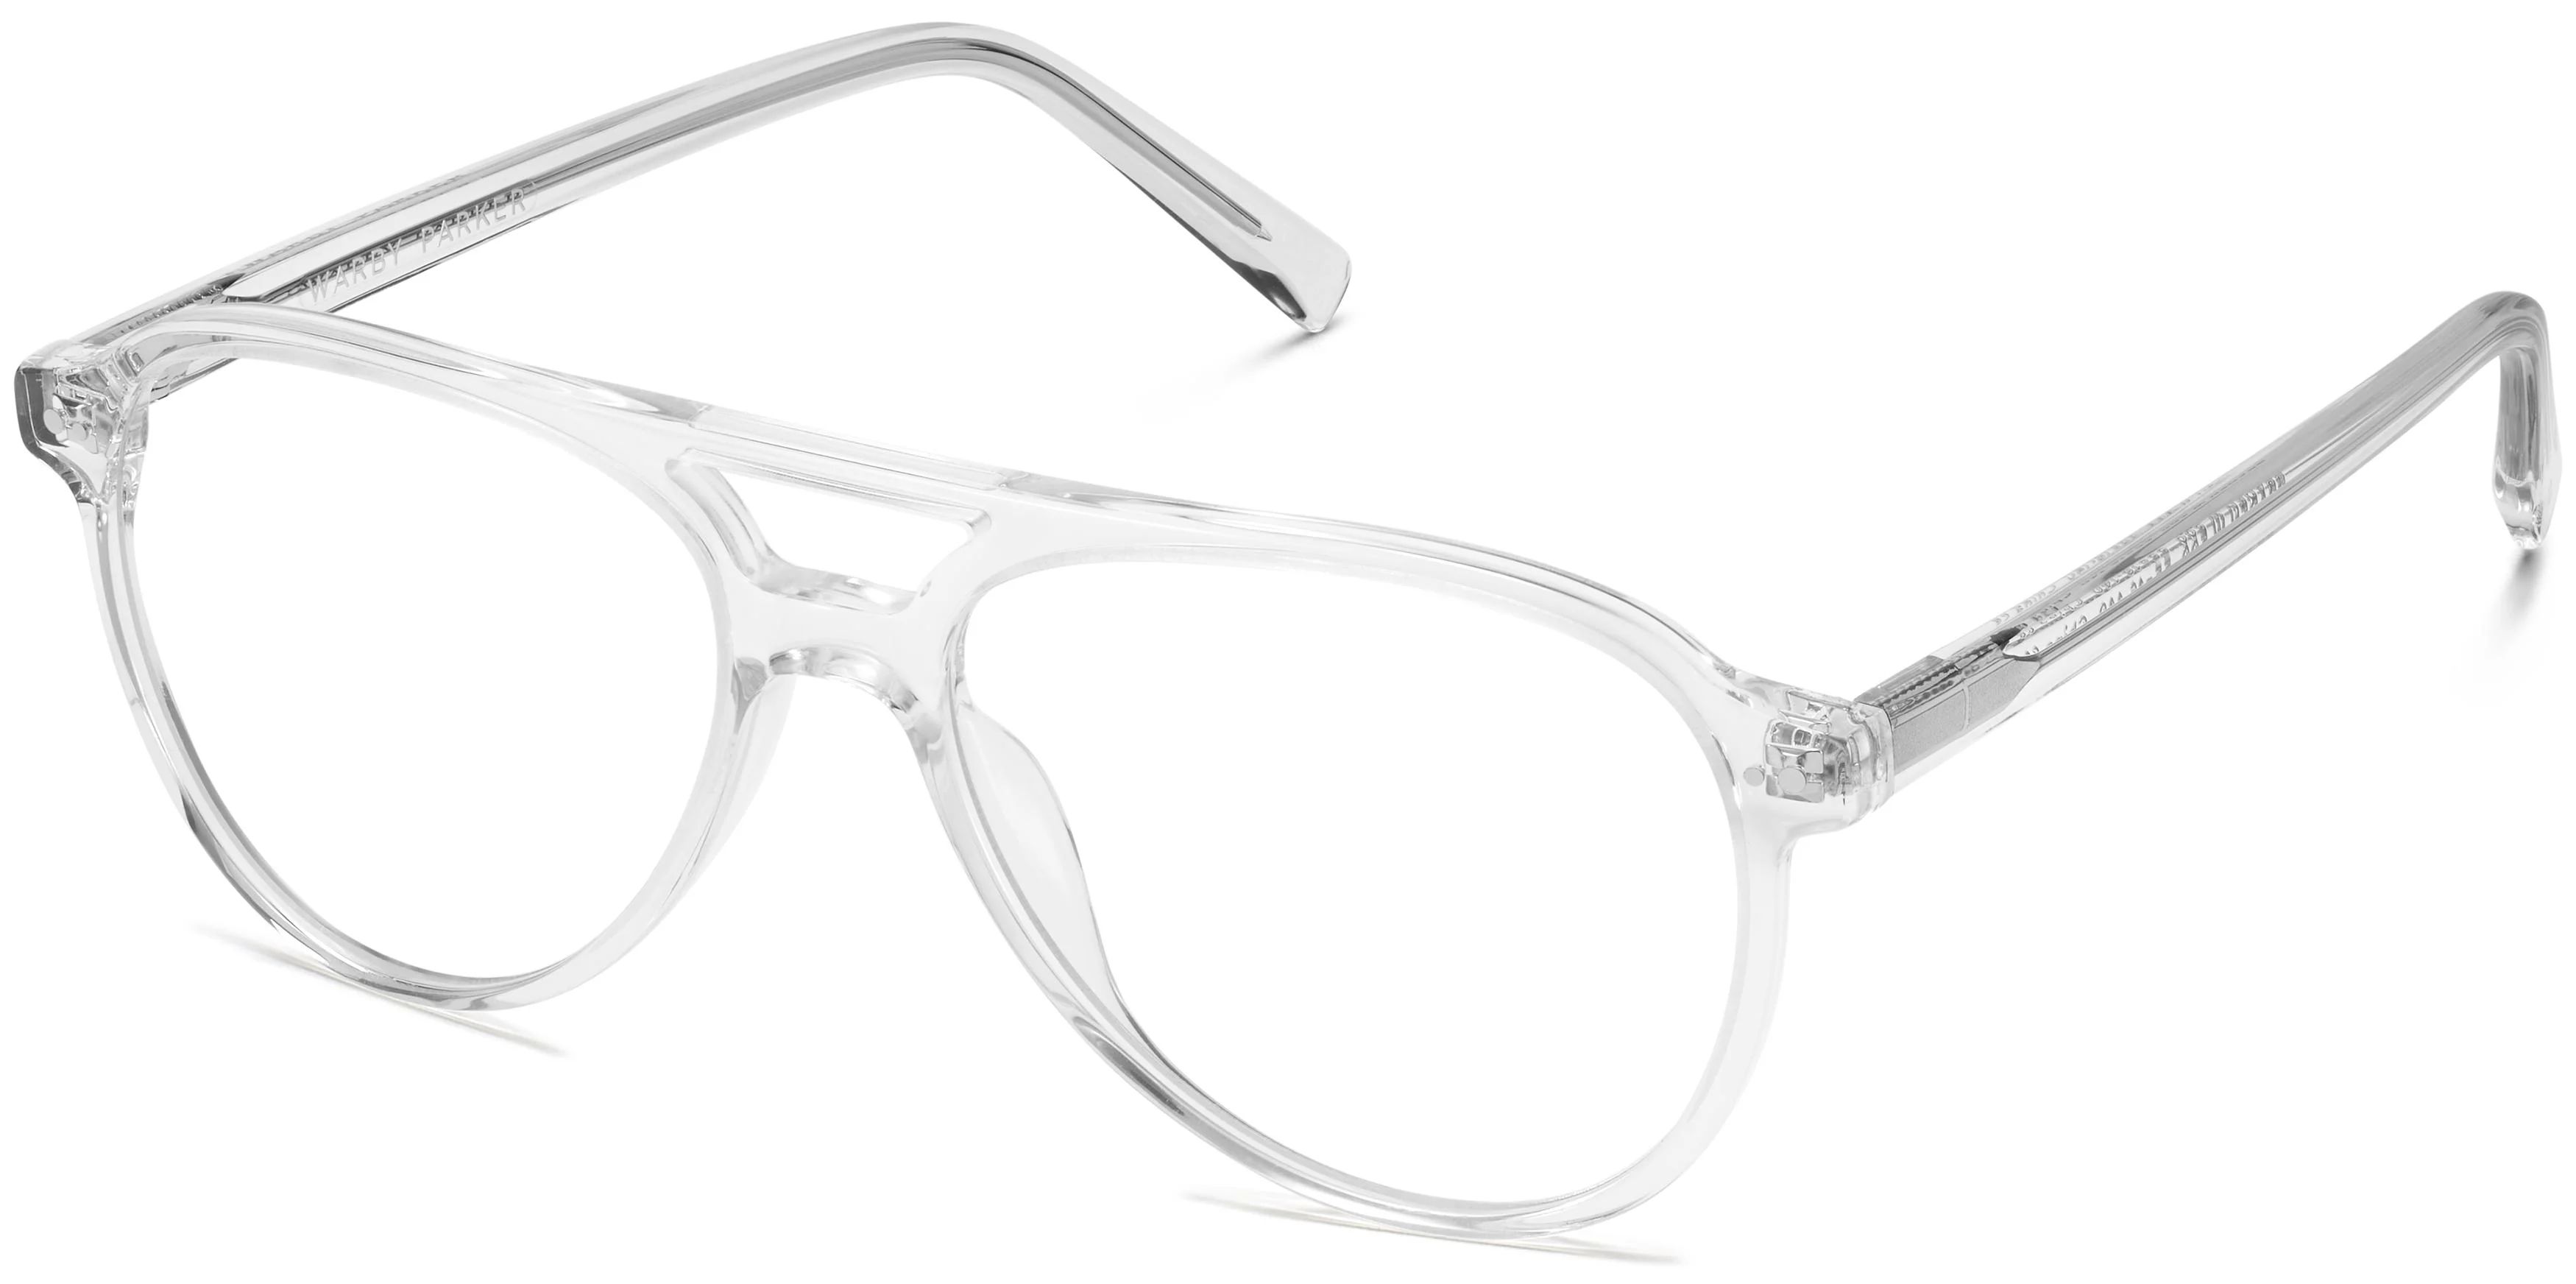 Braden Eyeglasses in Crystal | Warby Parker | Warby Parker (US)